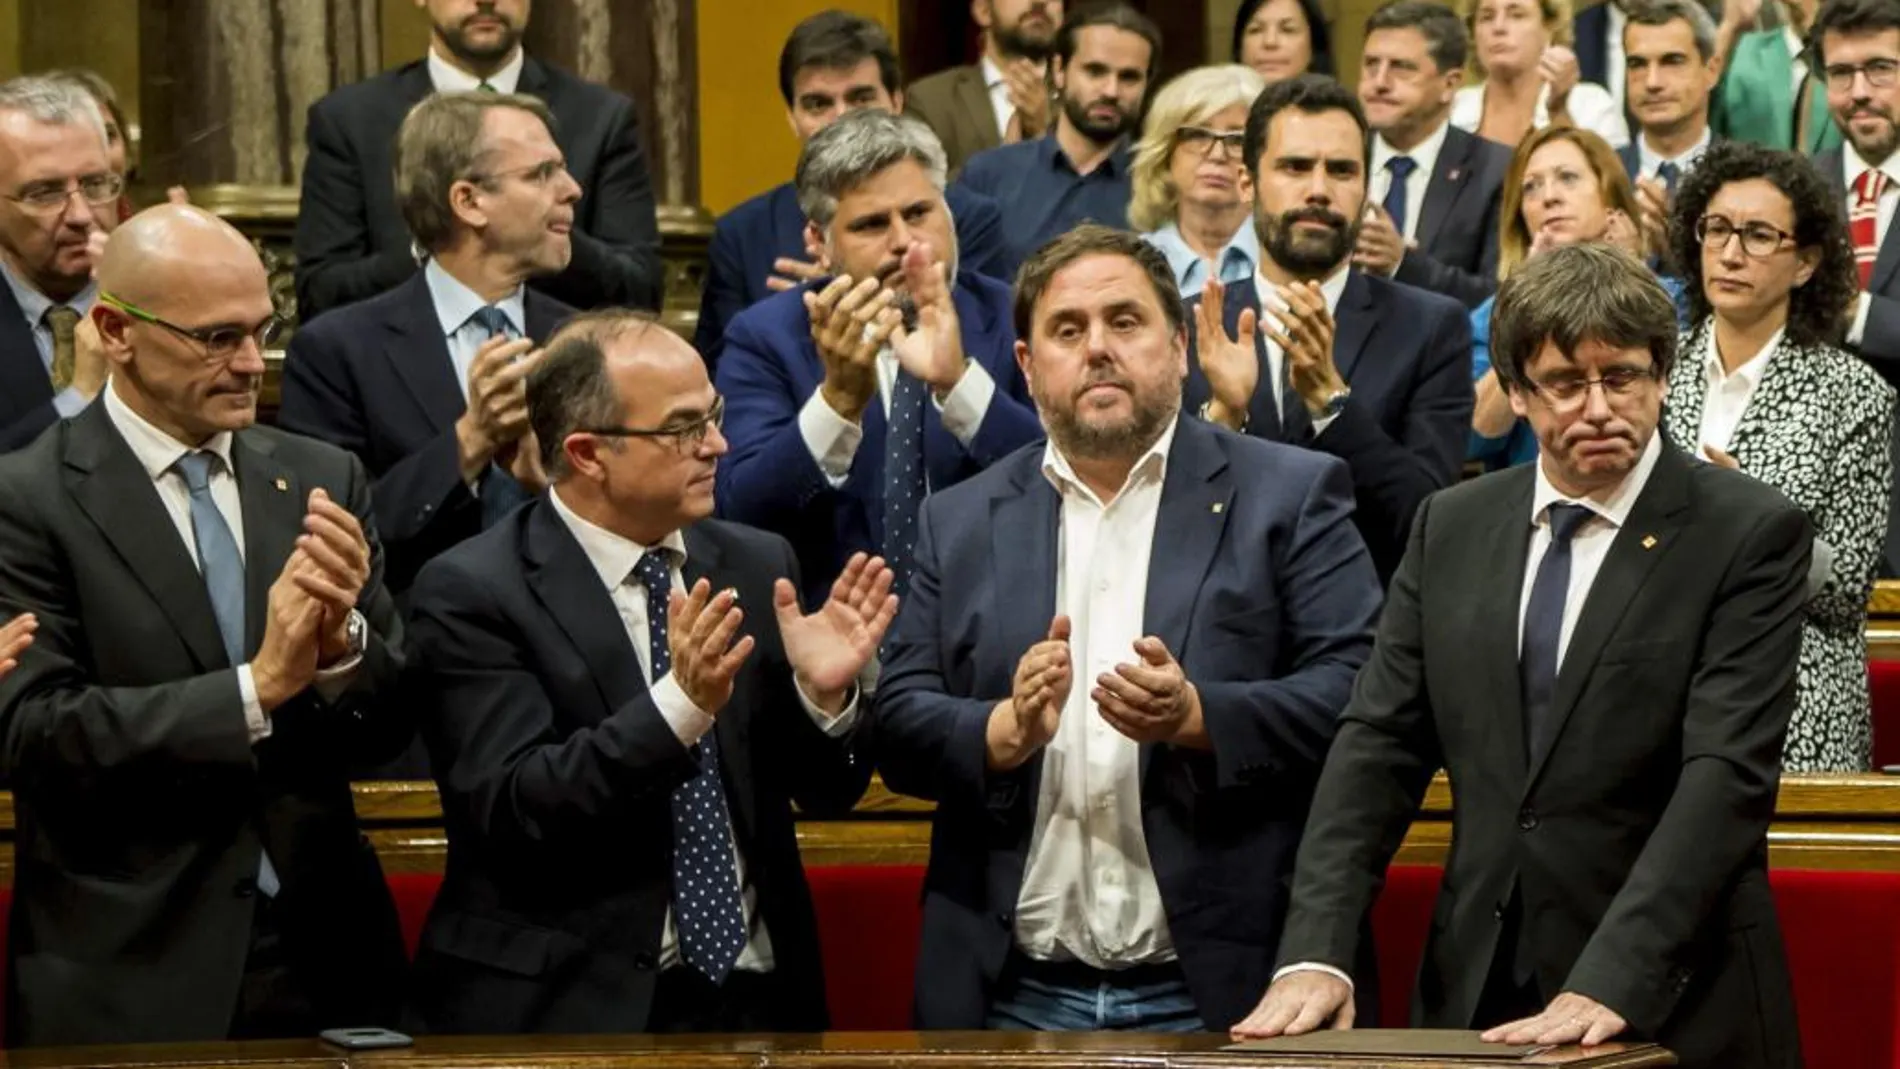 El pleno del Tribunal Constitucional ha considerado nula, por inconstitucional, la ley del referéndum catalán aprobada el pasado 6 de septiembre